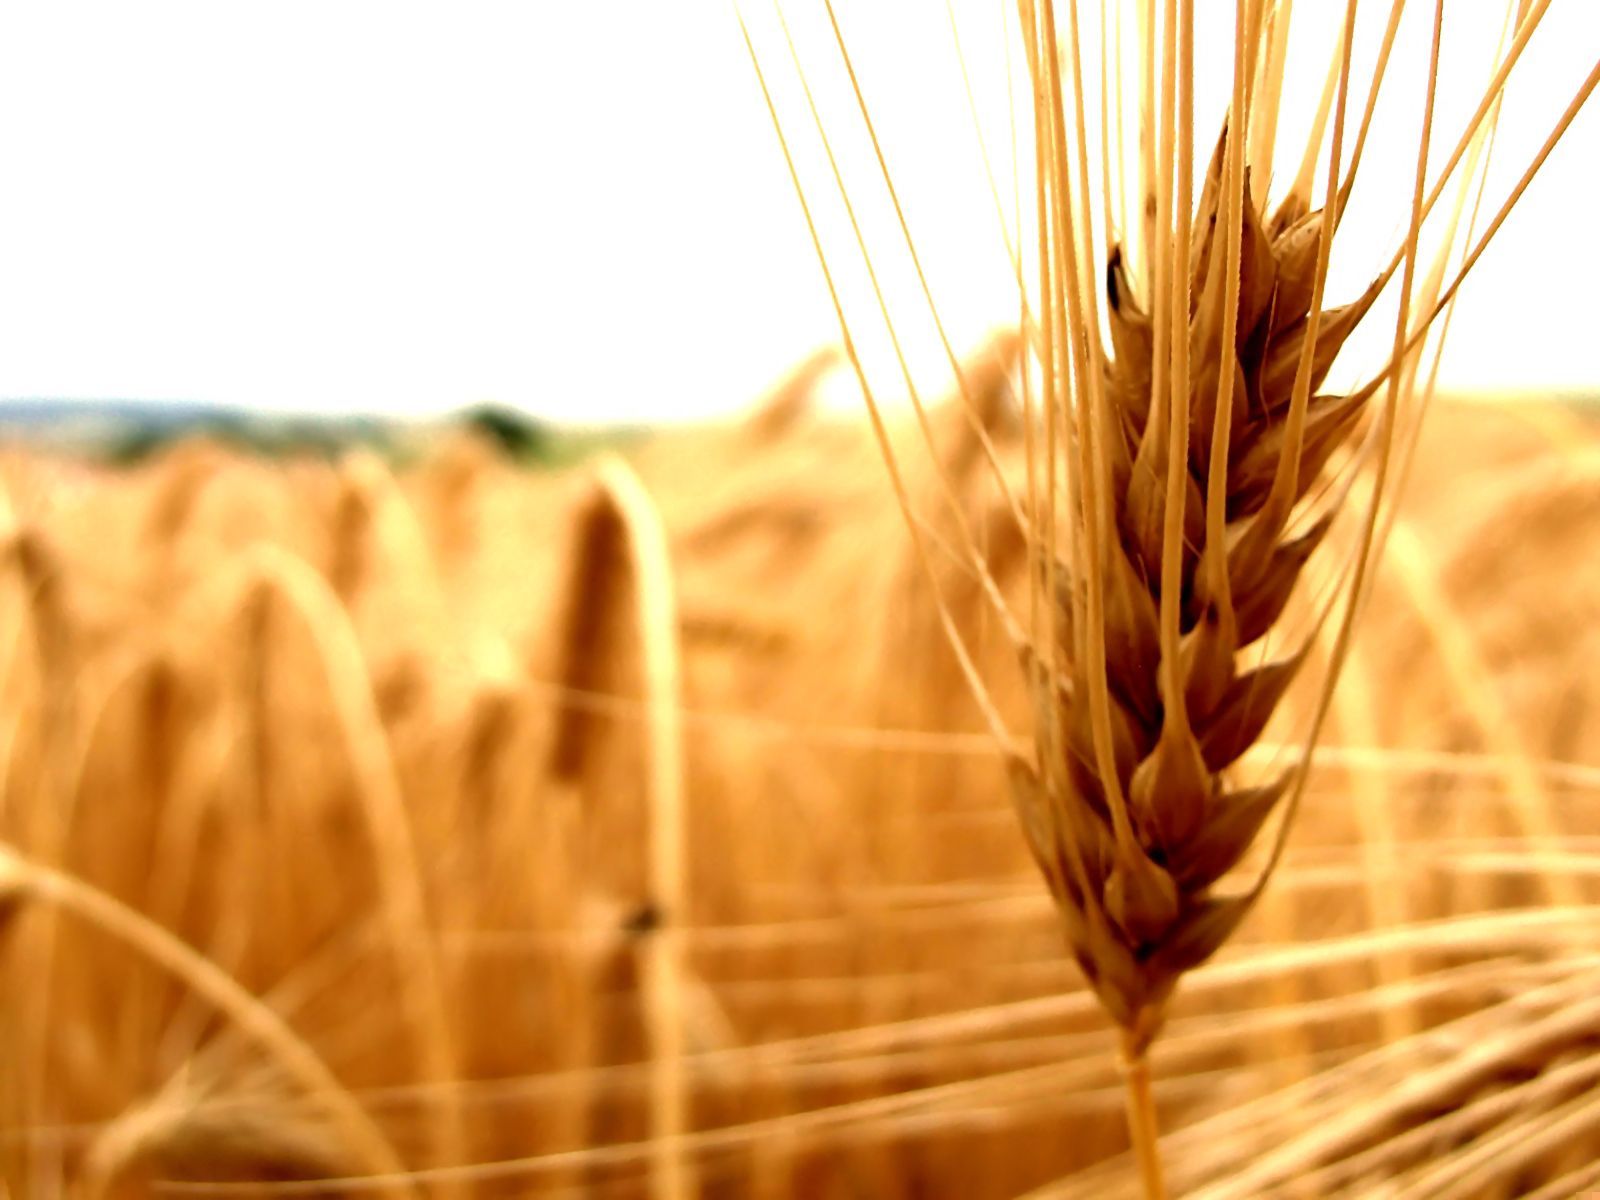 Фон колосья пшеницы